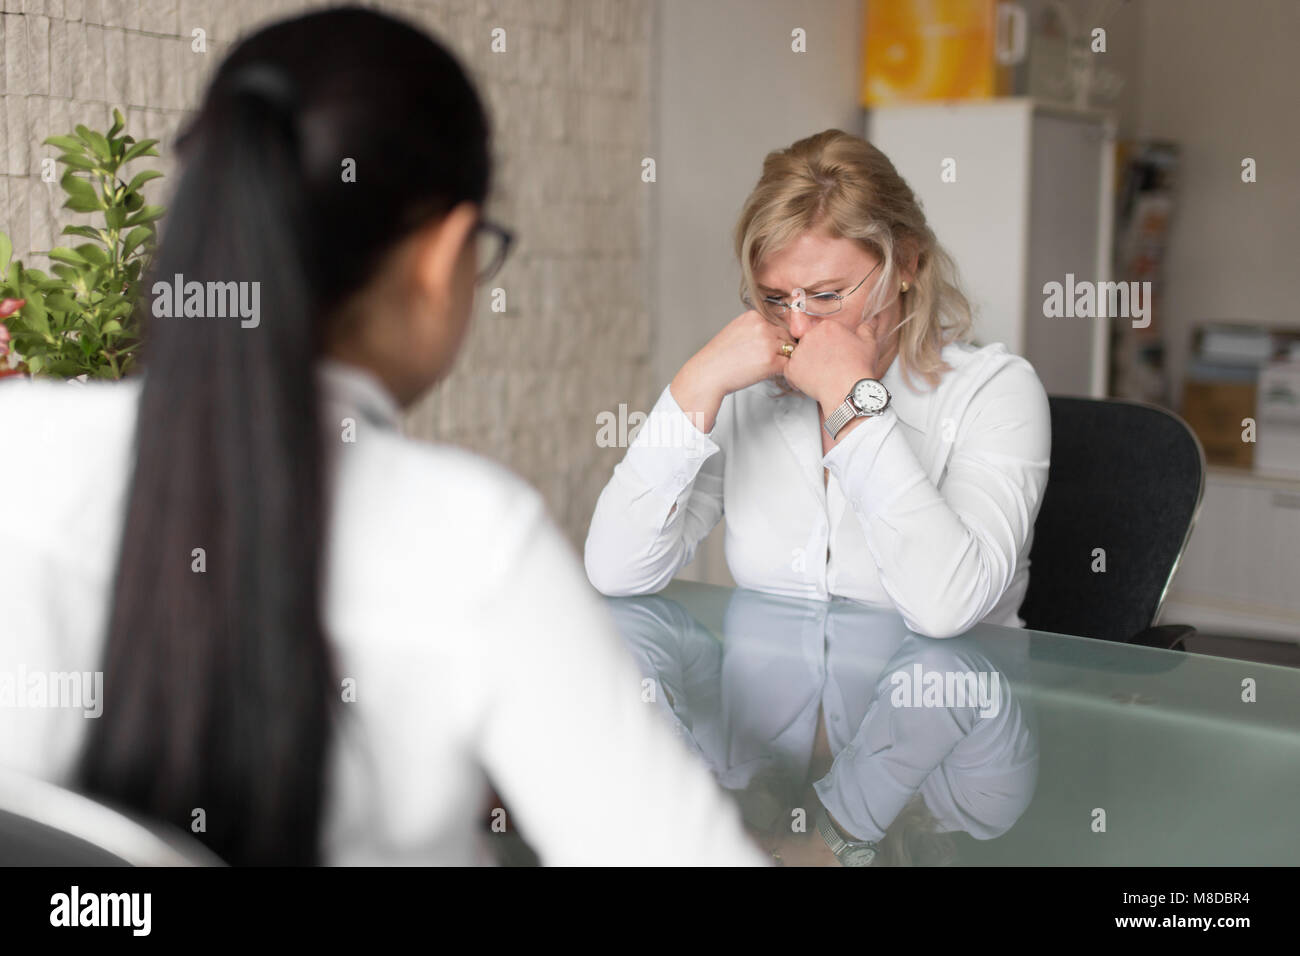 Demandeur d'emploi femme blonde triste échec sur interview in office Banque D'Images